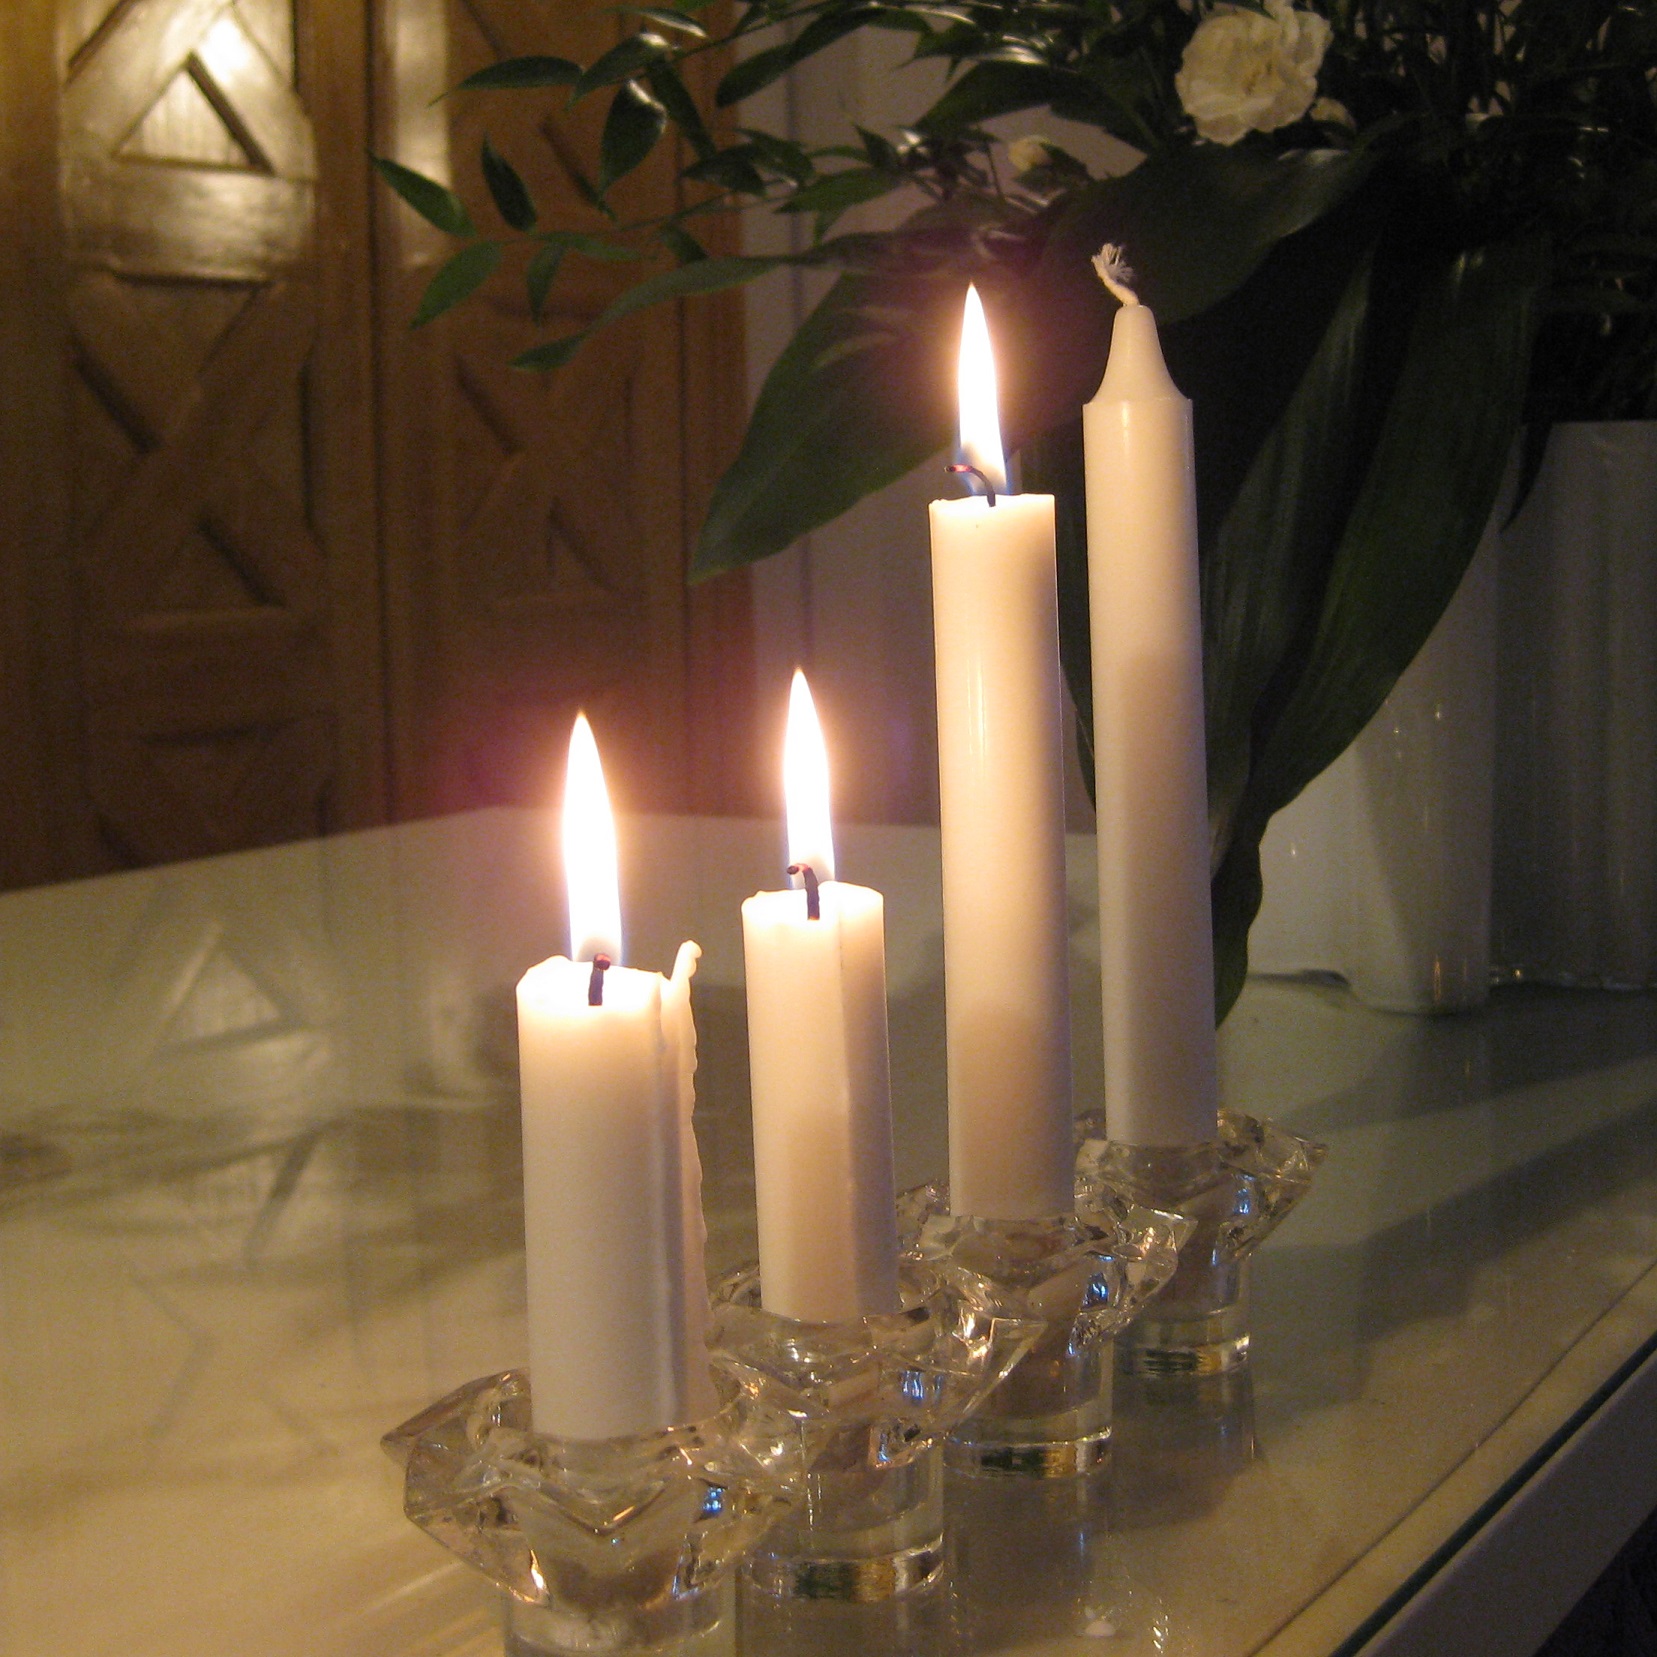 Neljä valkoista kynttilää on rivissä pöydällä, kolmessa liekki ja yksi vielä sytyttämättä.  Palavista kynttilöistä kaksi on jo melko lyhyitä.